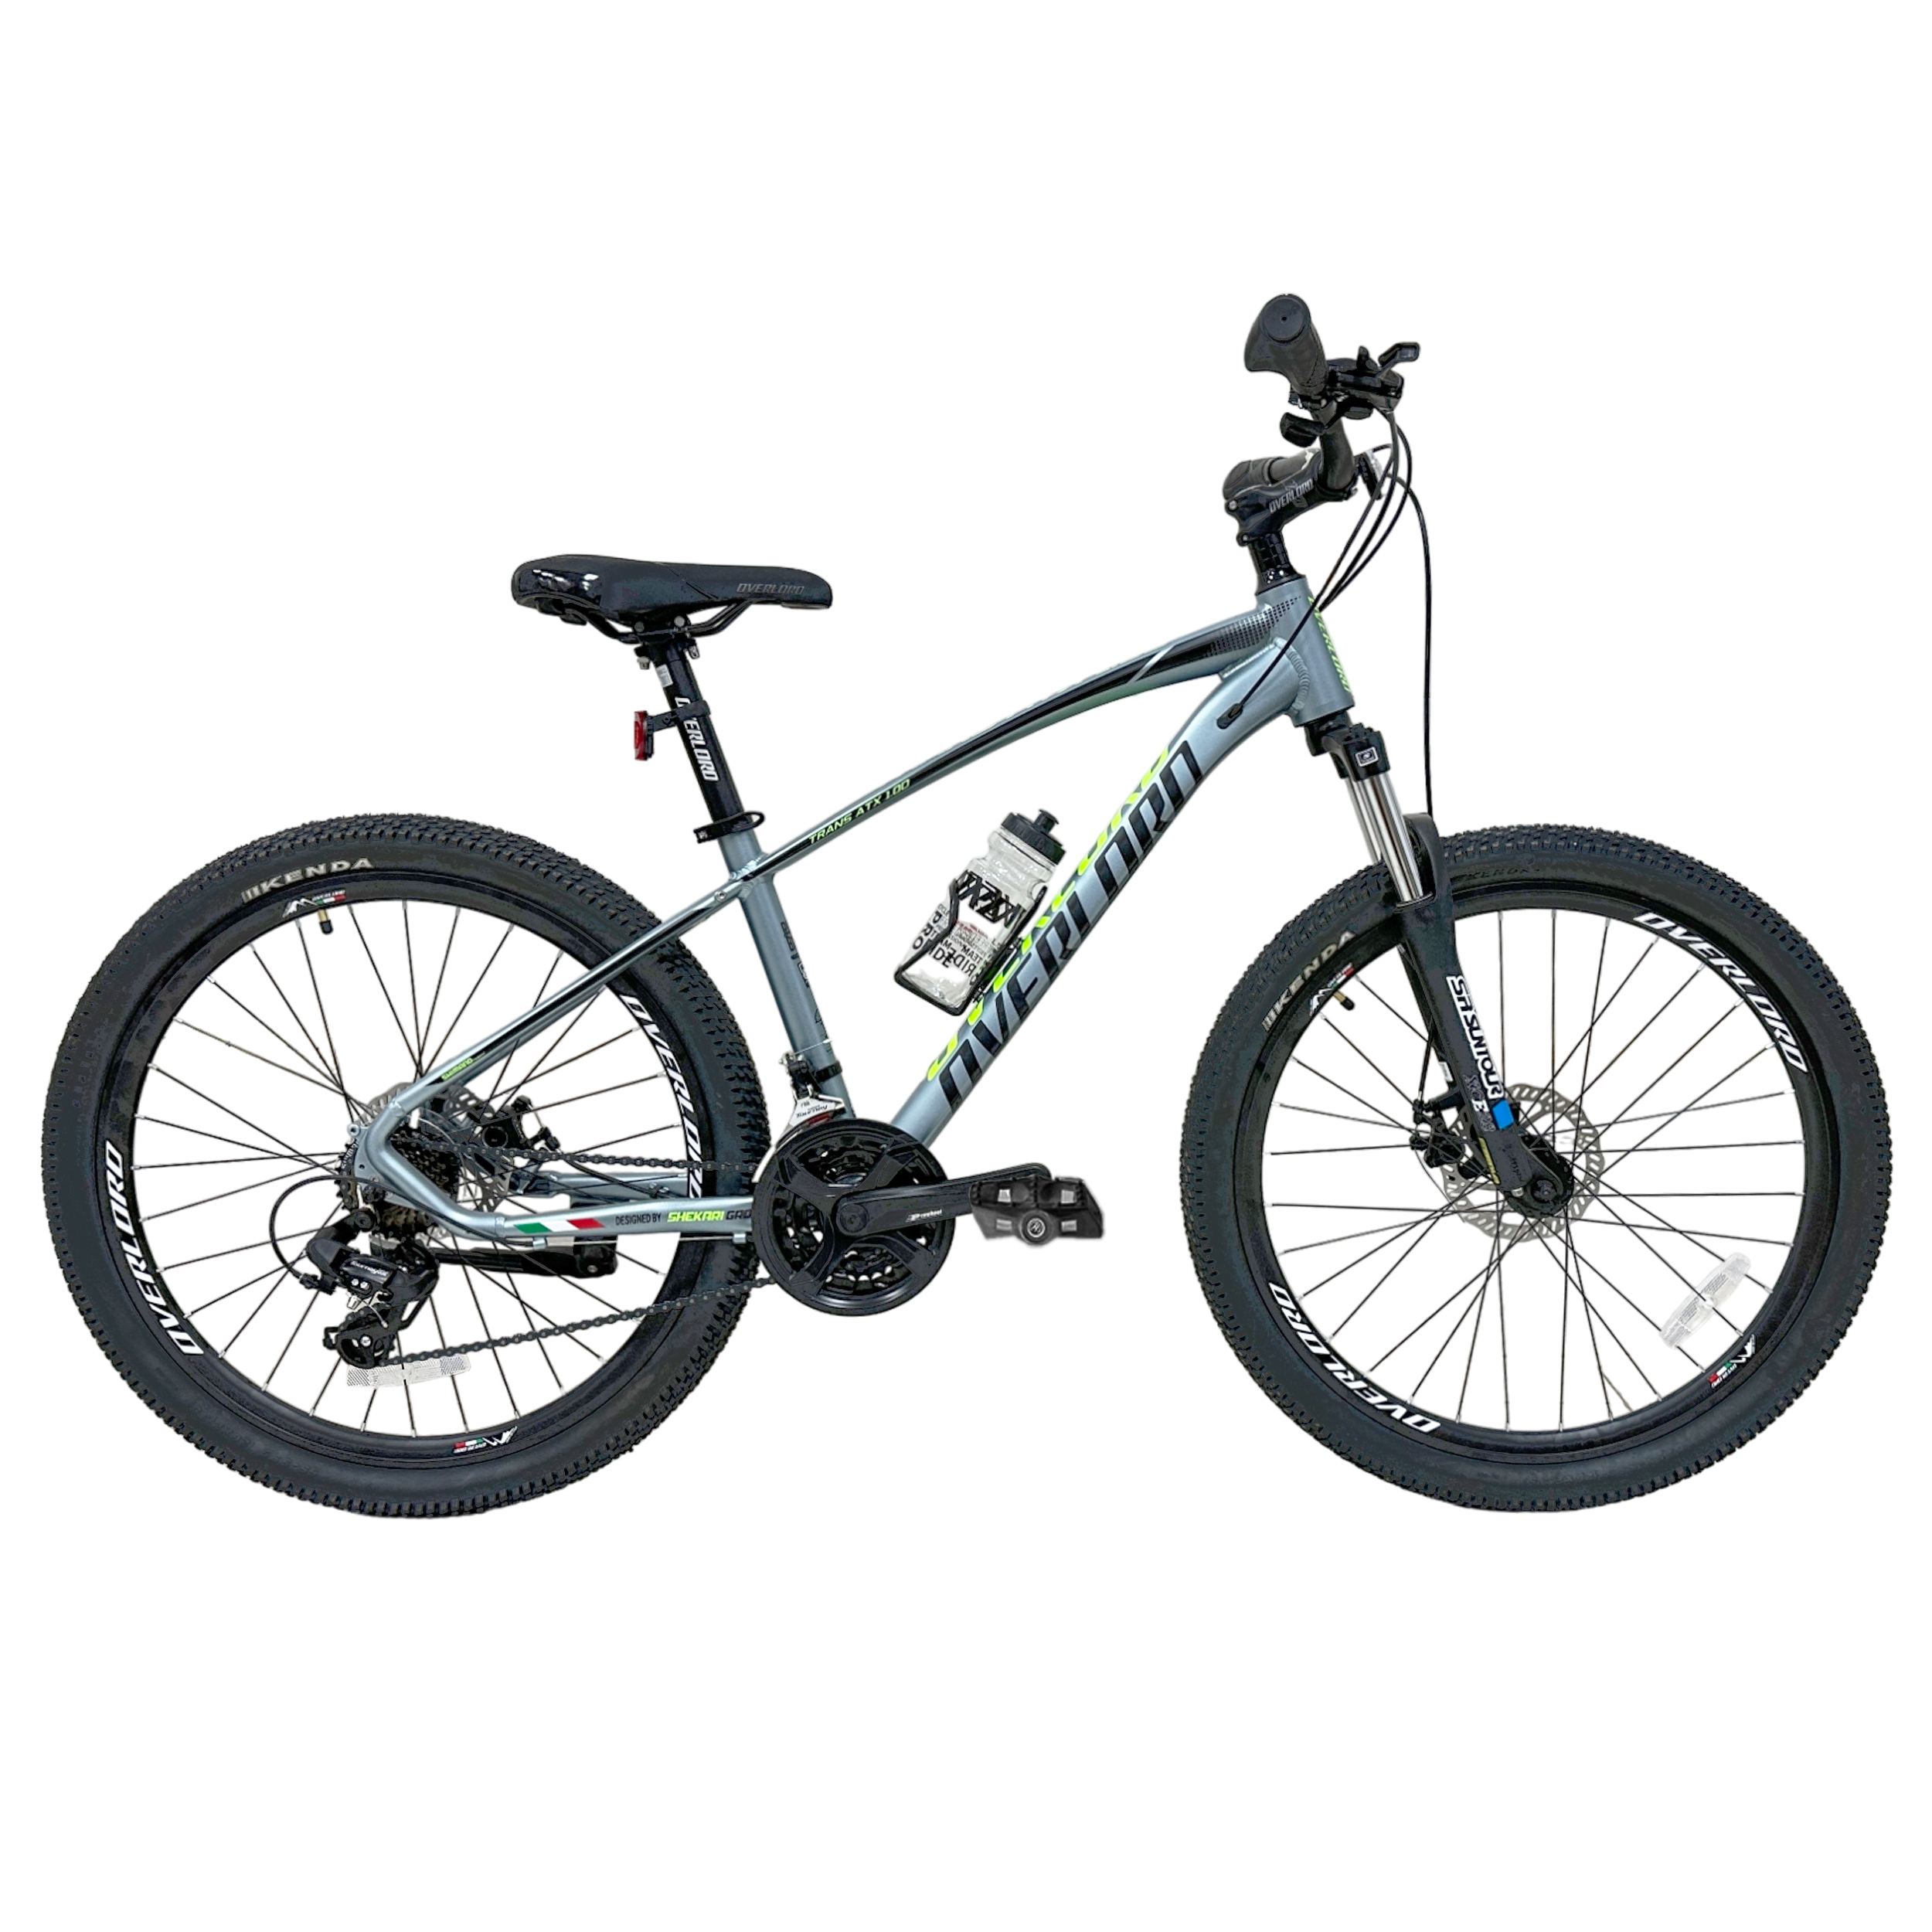 نکته خرید - قیمت روز دوچرخه کوهستان اورلورد مدل TRANS ATX1.0D دیسکی سایز طوقه 26 خرید